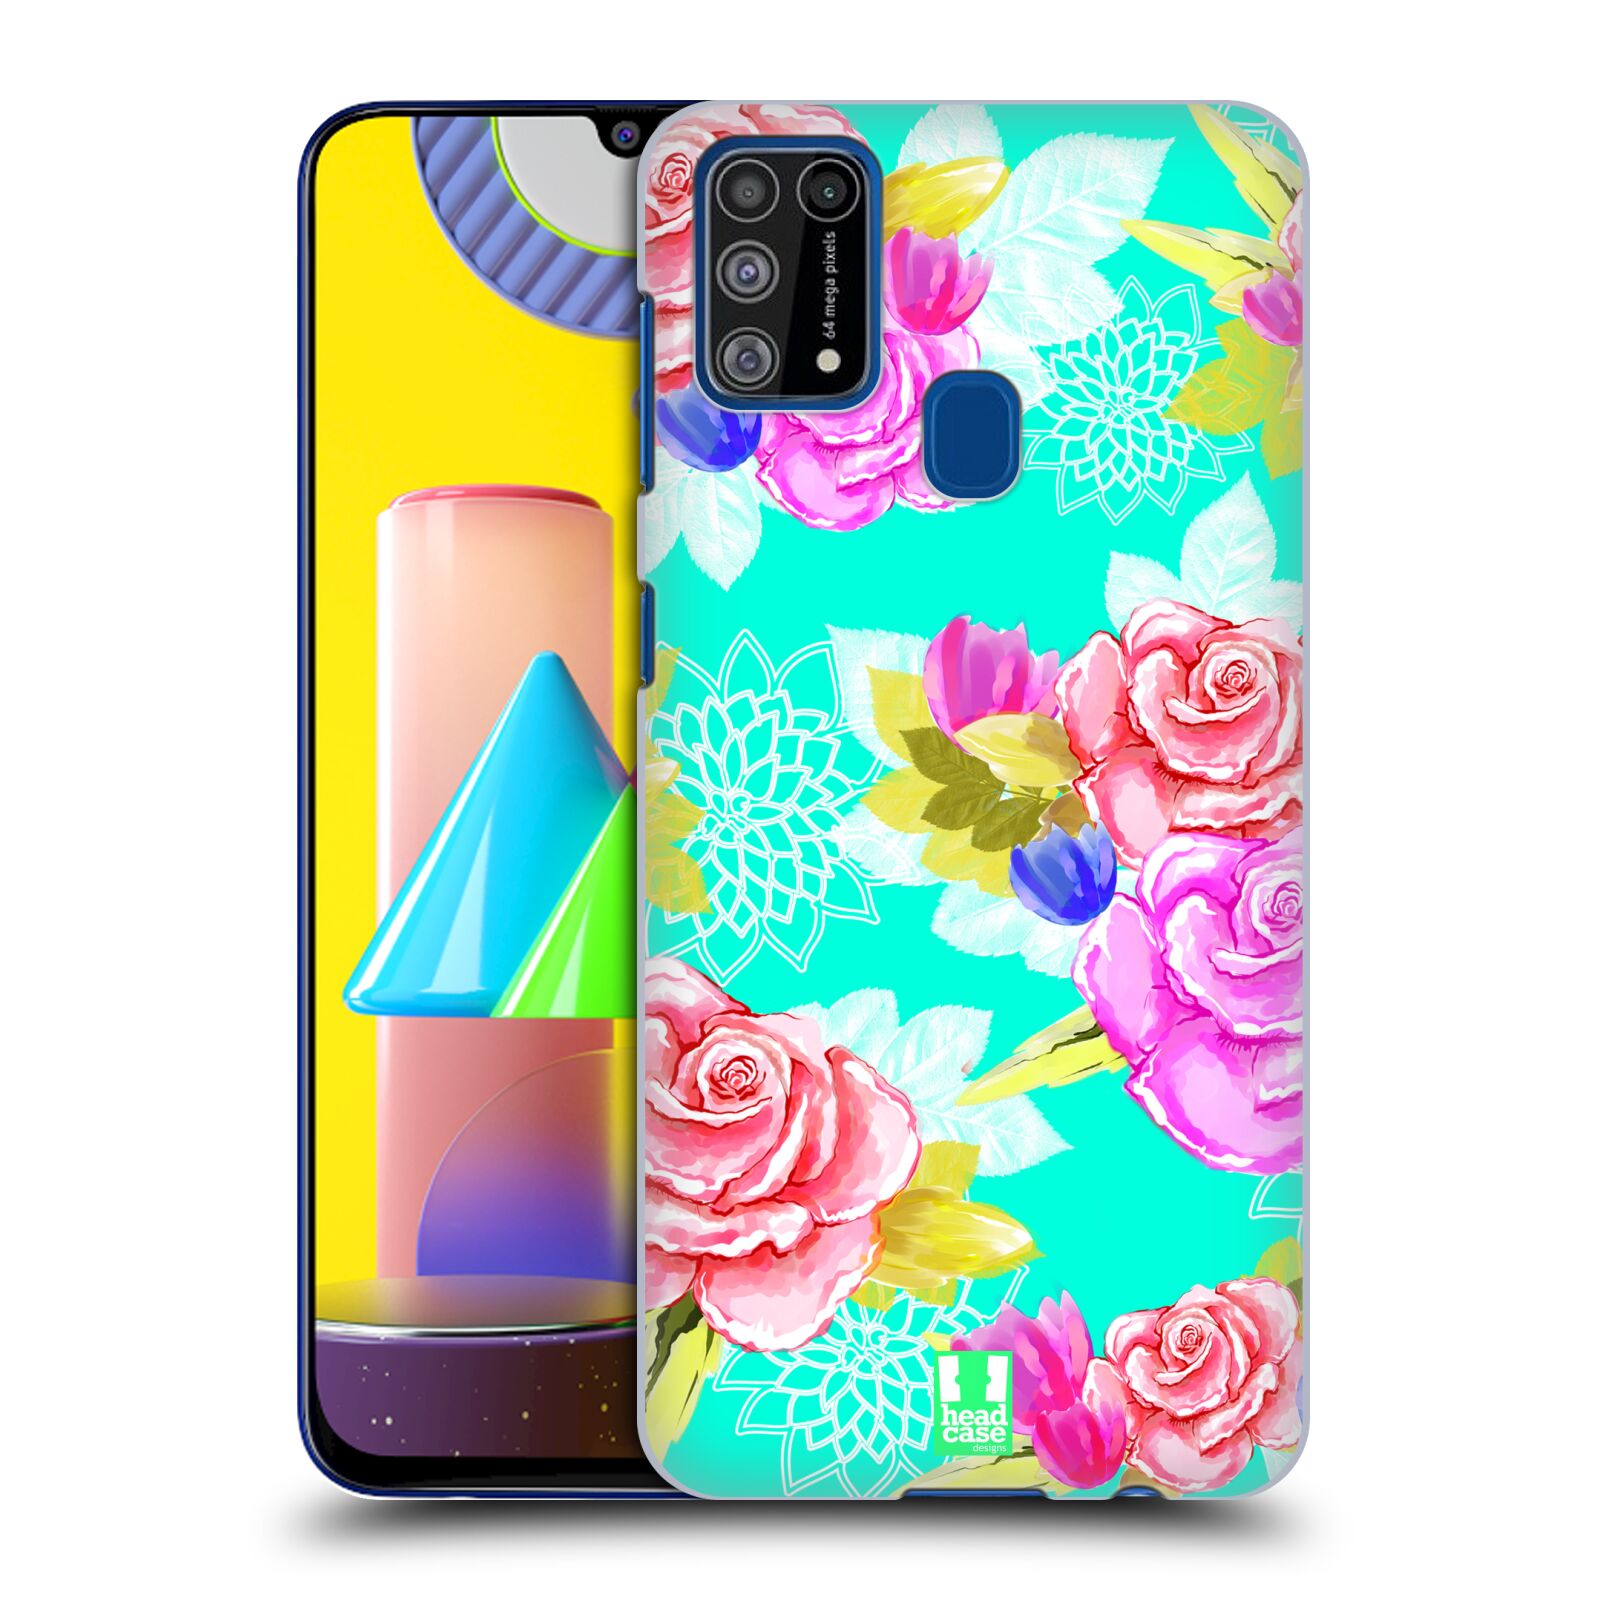 Plastový obal HEAD CASE na mobil Samsung Galaxy M31 vzor Malované květiny barevné AQUA MODRÁ